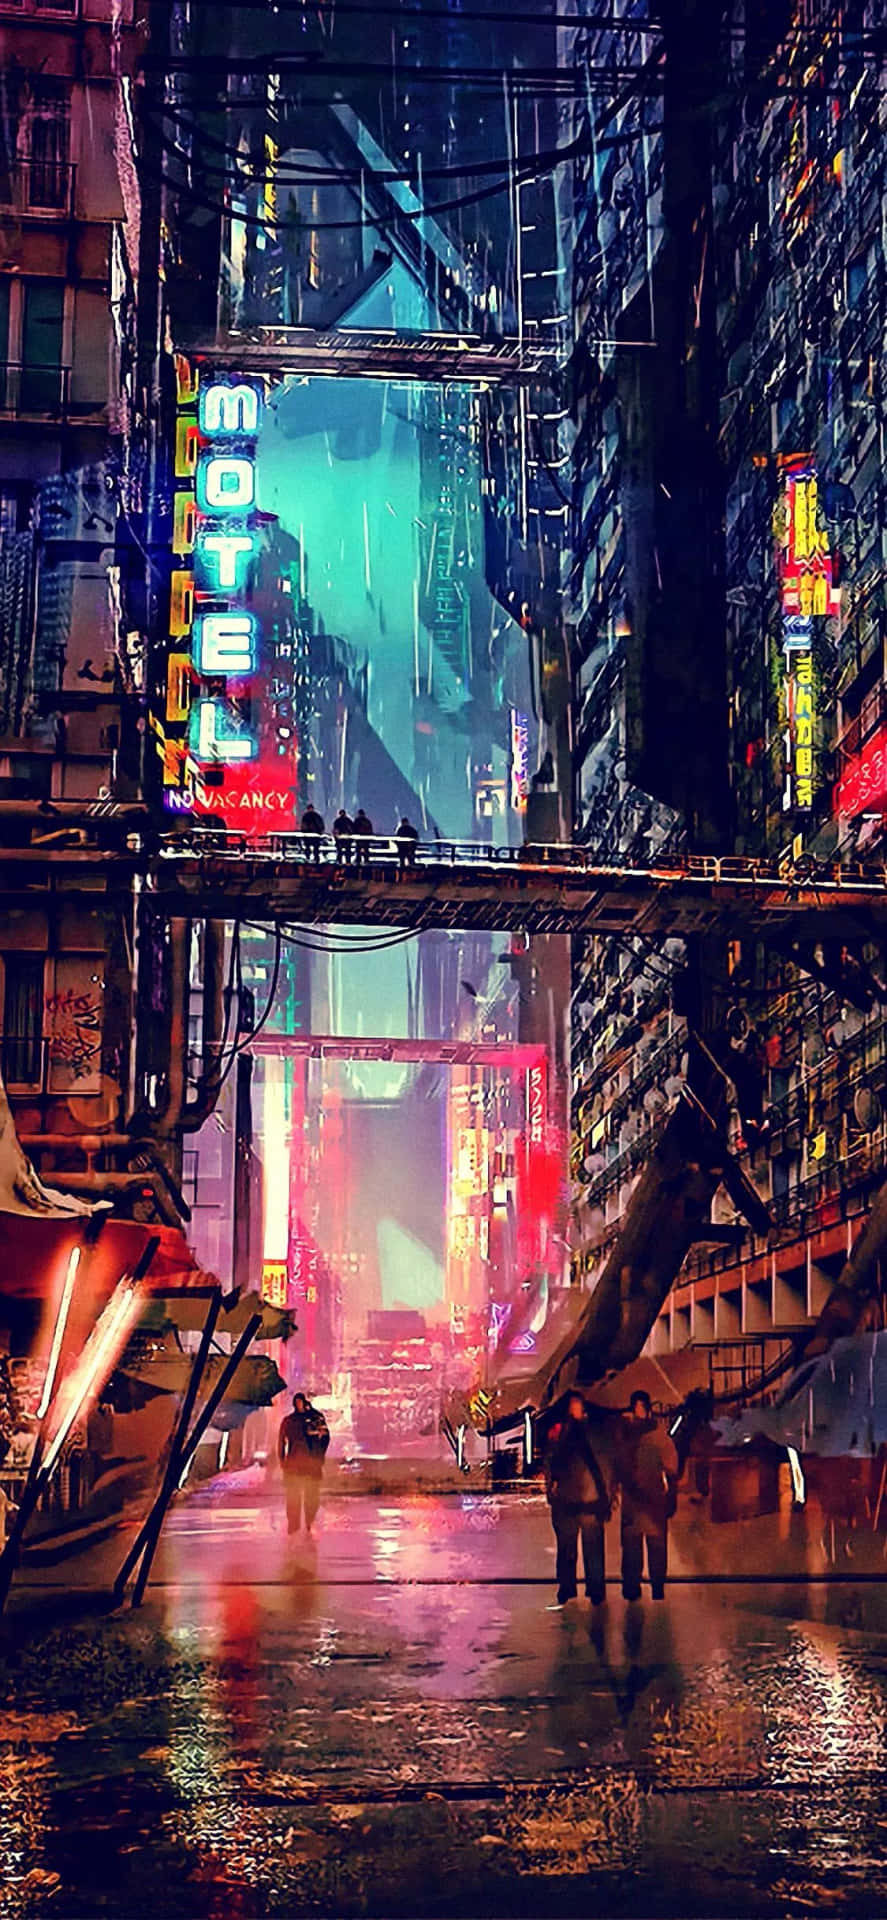 Lalluvia Cae Y Las Luces Bailan A Través De Una Futurista Ciudad Nocturna De Estilo Cyberpunk. Fondo de pantalla